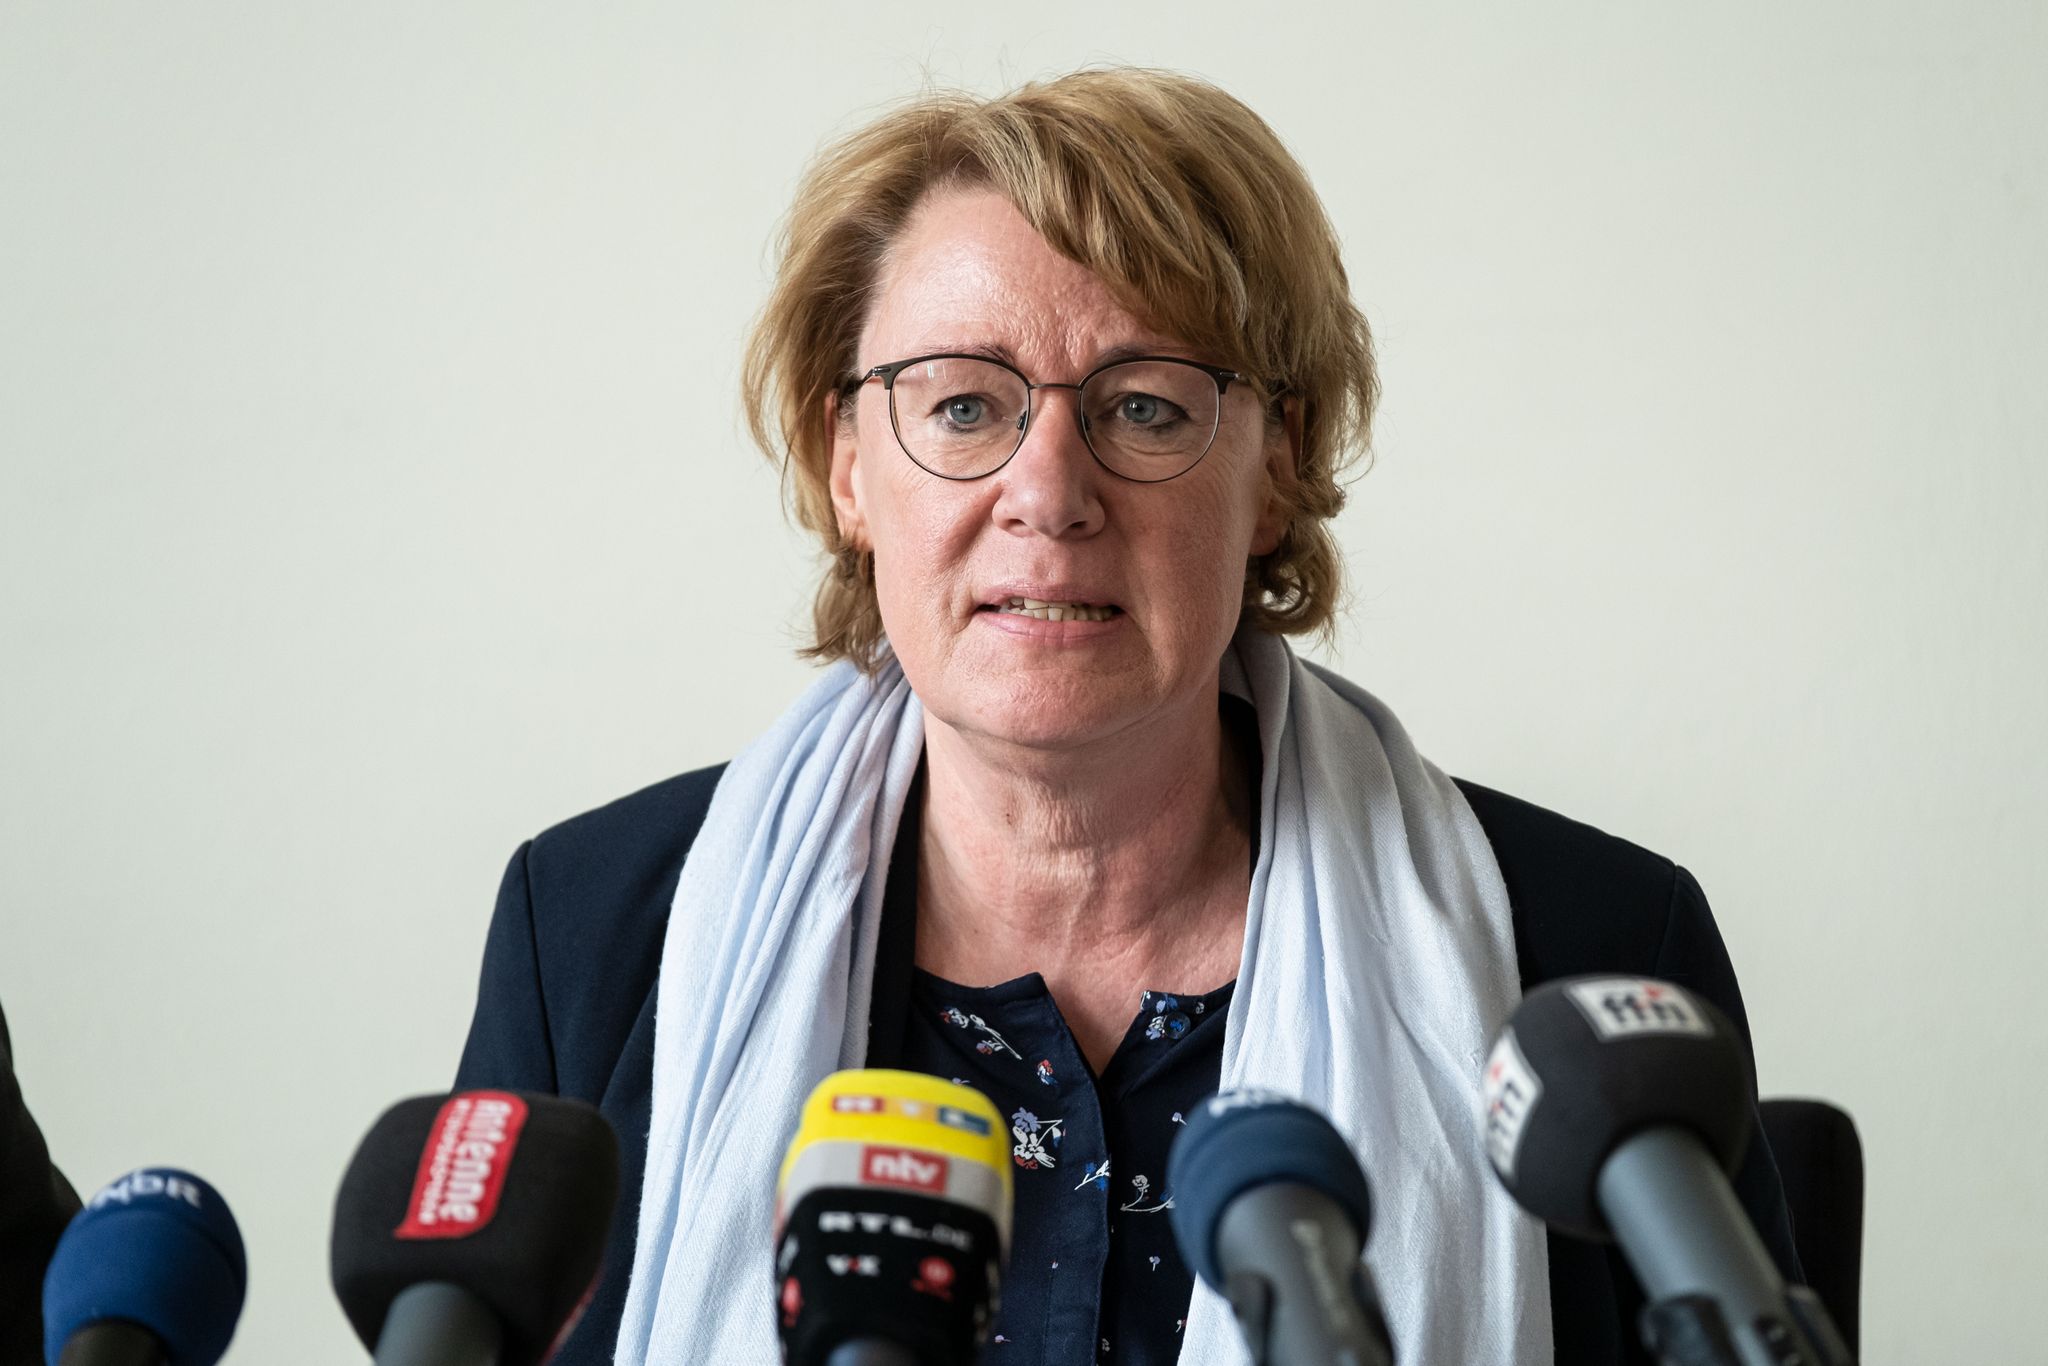 Agrarministerin Barbara Otte-Kinast (CDU) spricht bei einer Pressekonferenz.Peter Steffen/dpa/